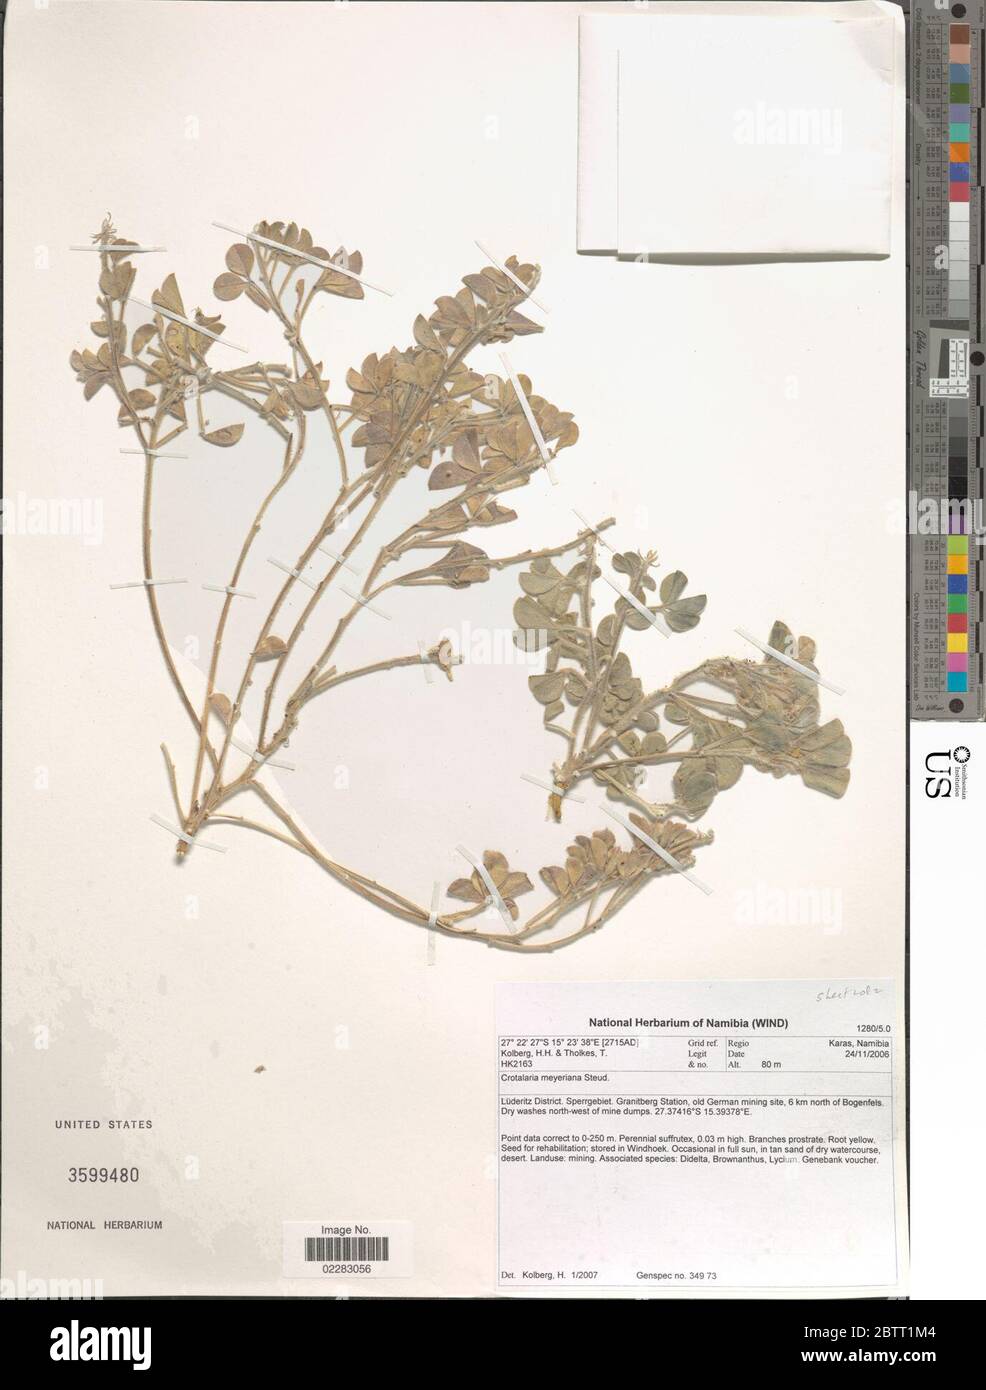 Crotalaria meyerana Steud. Stock Photo